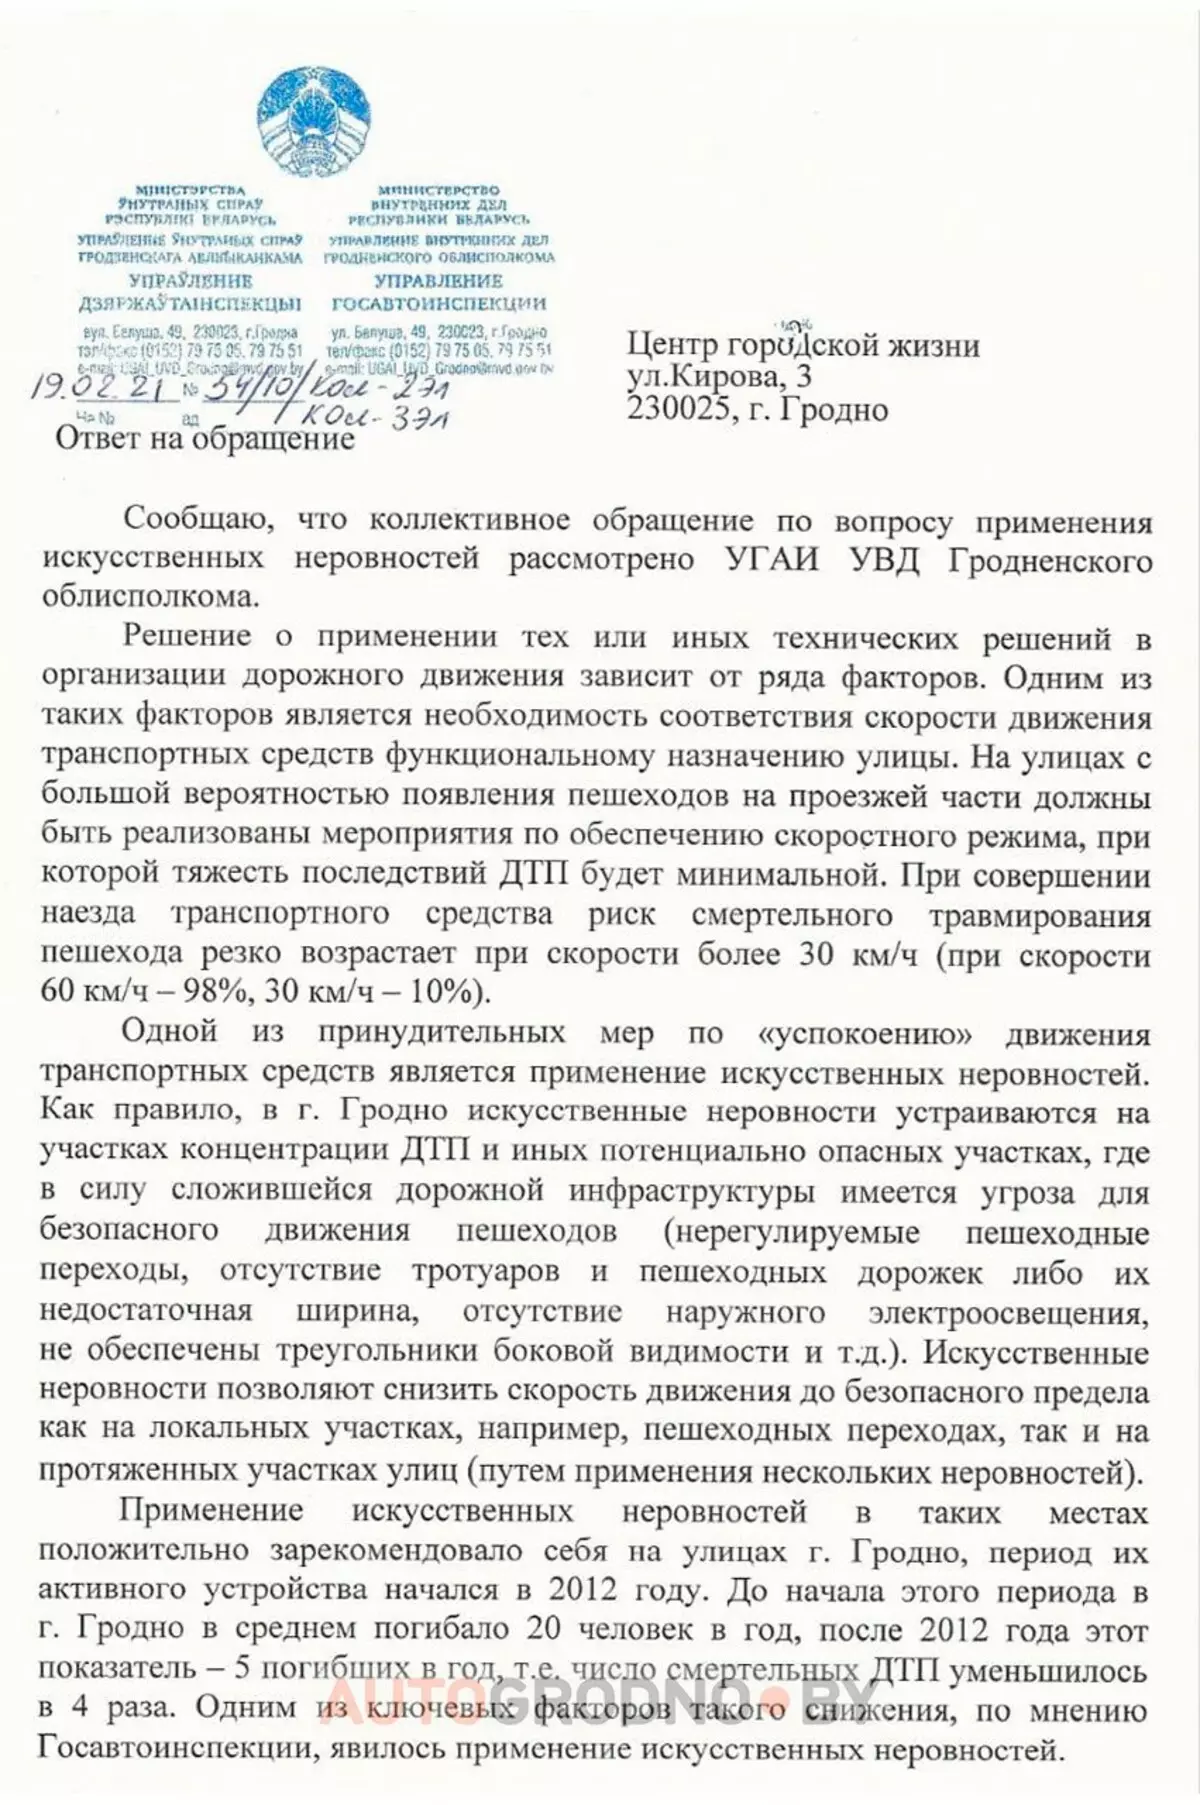 В Grodno активистите получиха отговор на петицията, за да намалят броя на 